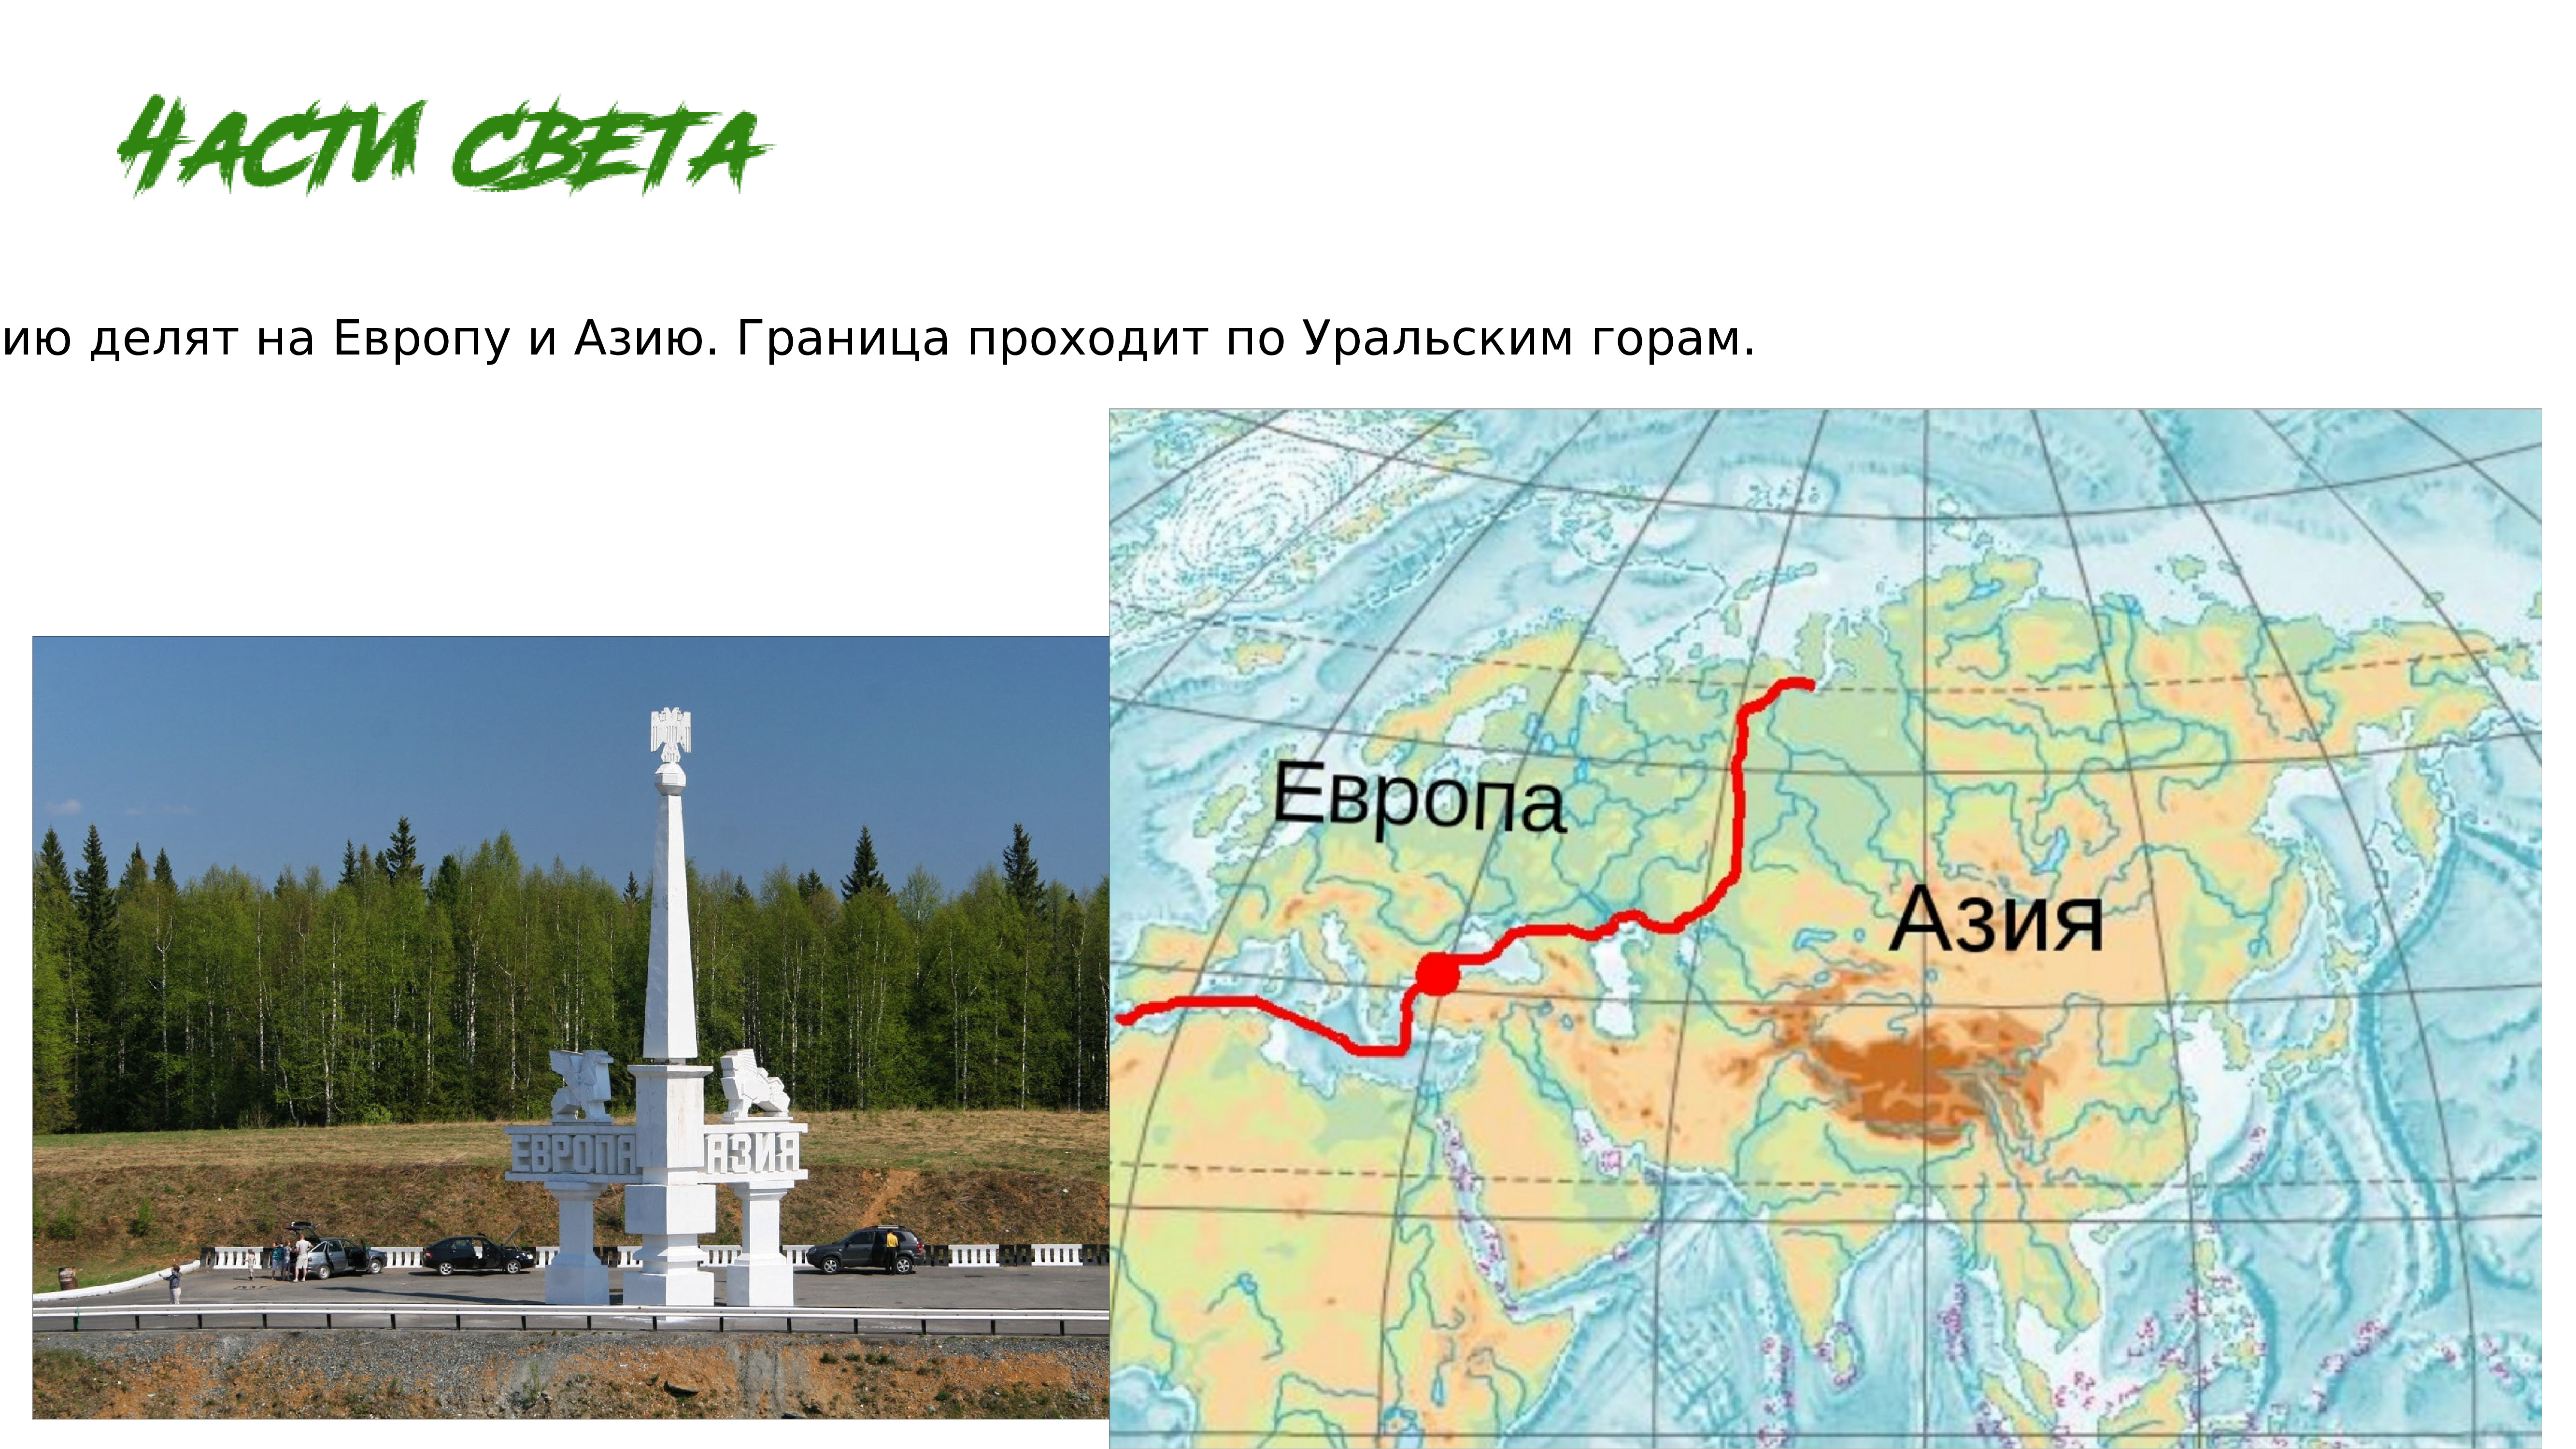 Уральские горы граница между Европой и Азией